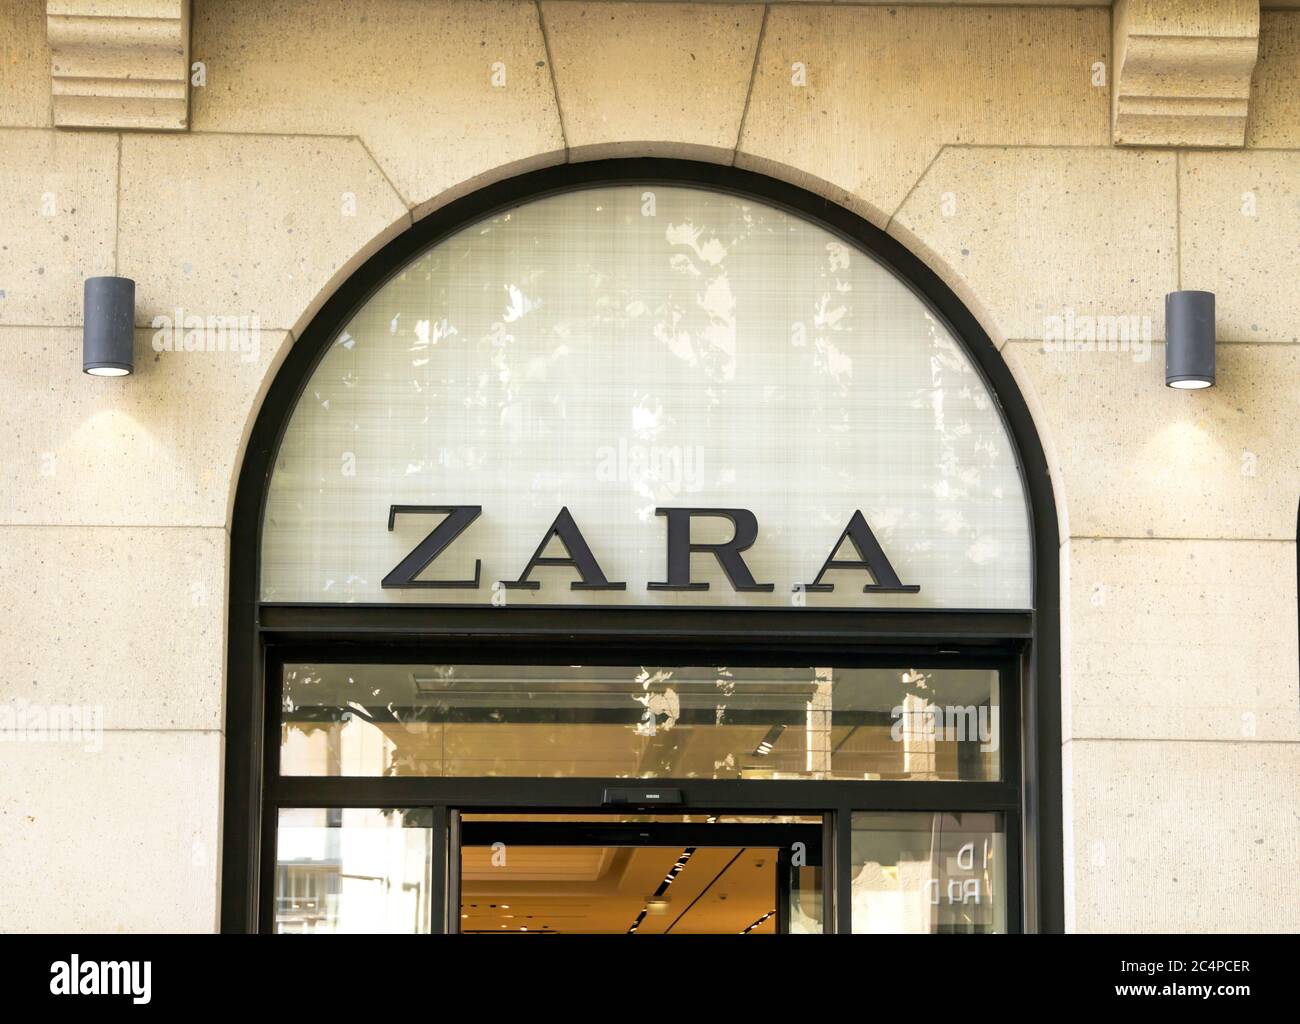 München, DEUTSCHLAND: ZARA Modegeschäft. Zara ist ein spanischer Händler  für Bekleidung und Accessoires Stockfotografie - Alamy